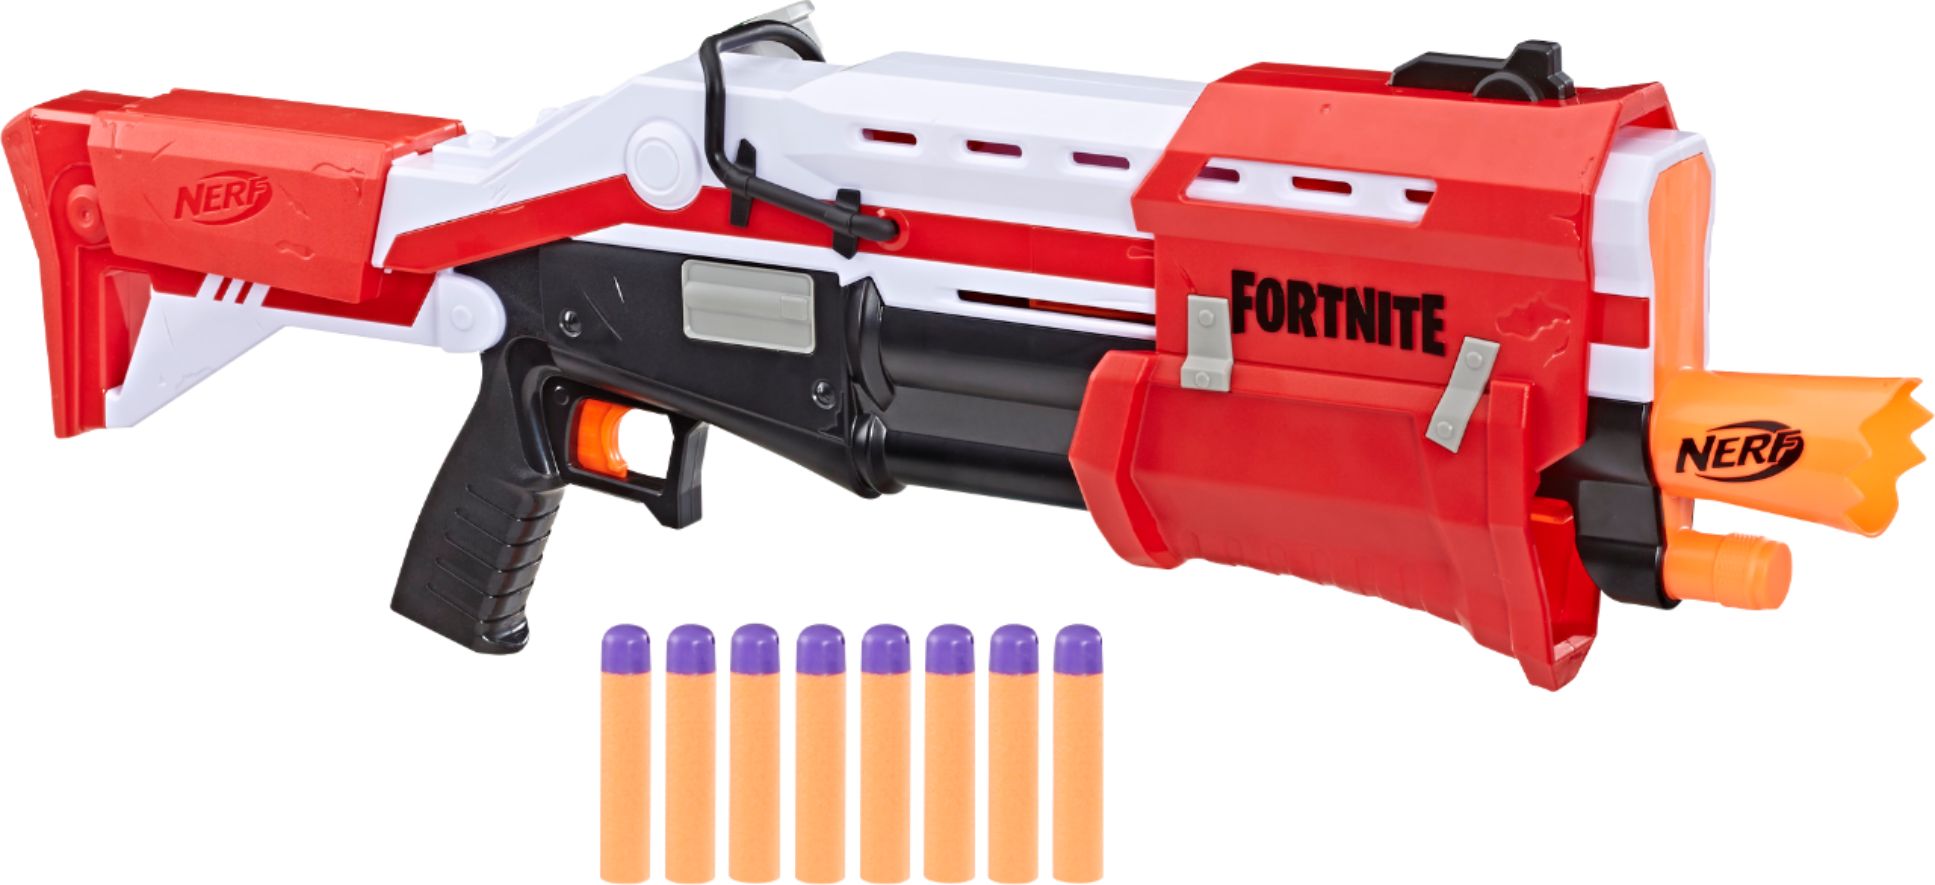 Nerf Fortnite Ts Blaster E6159 Best Buy